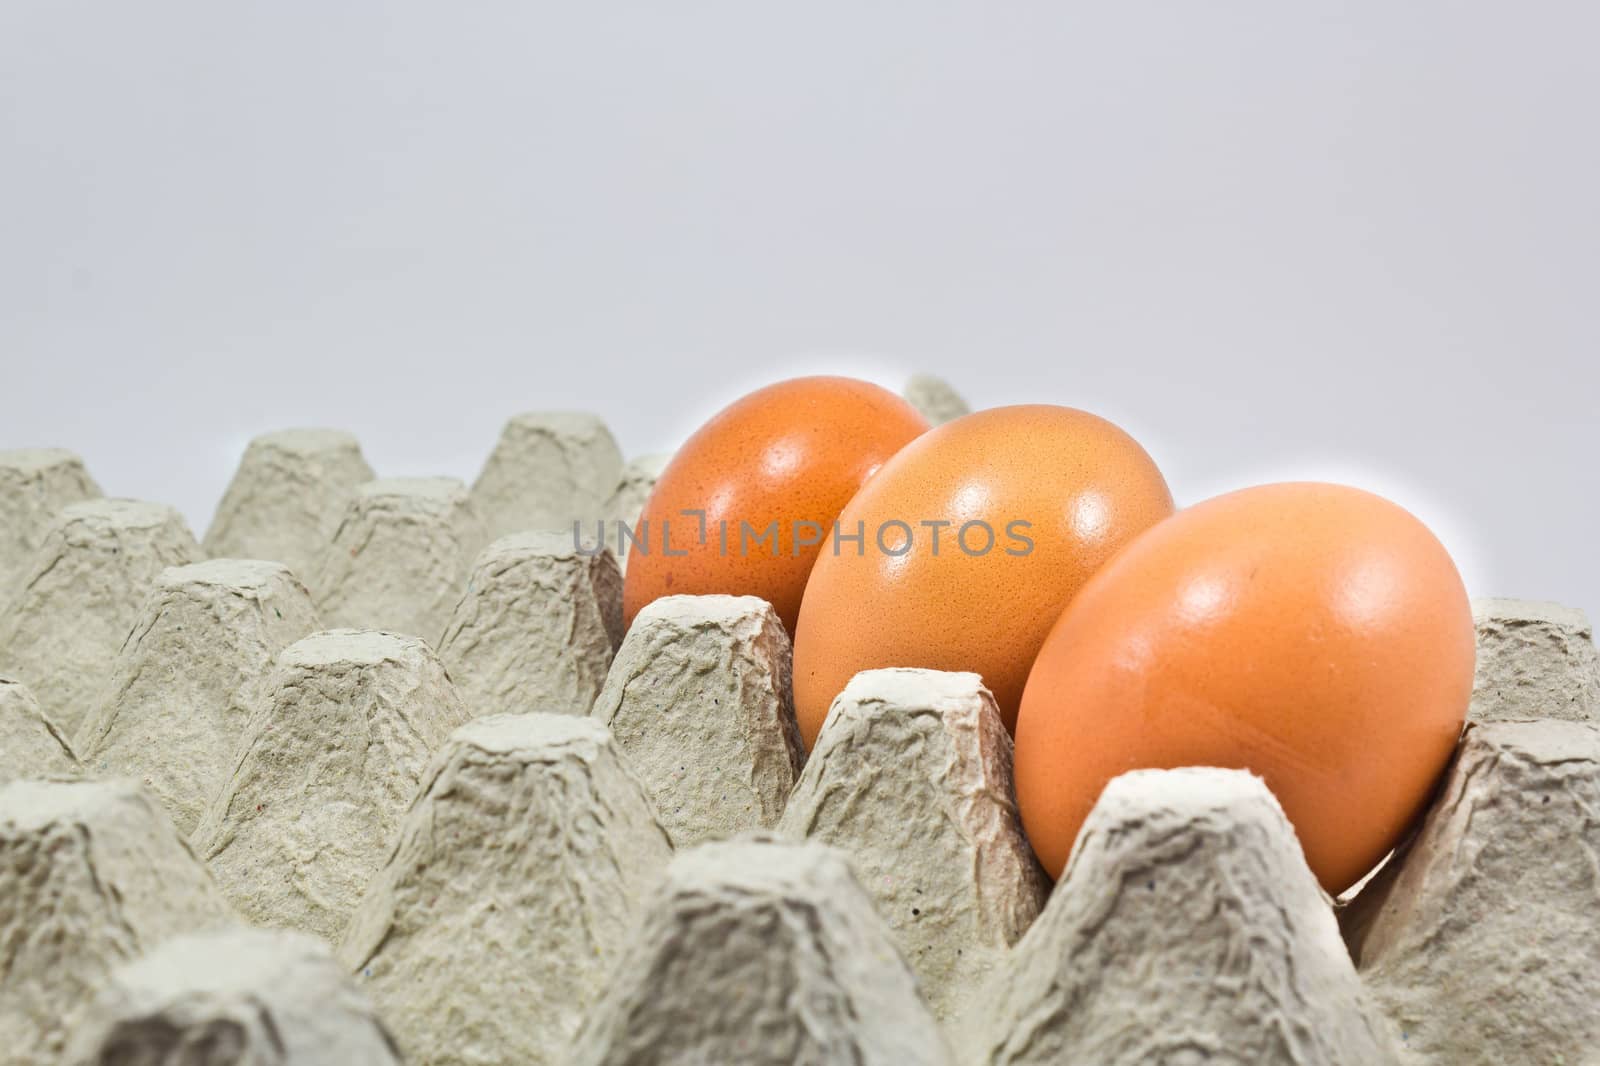 tray of fresh  free range organic eggs by sutipp11